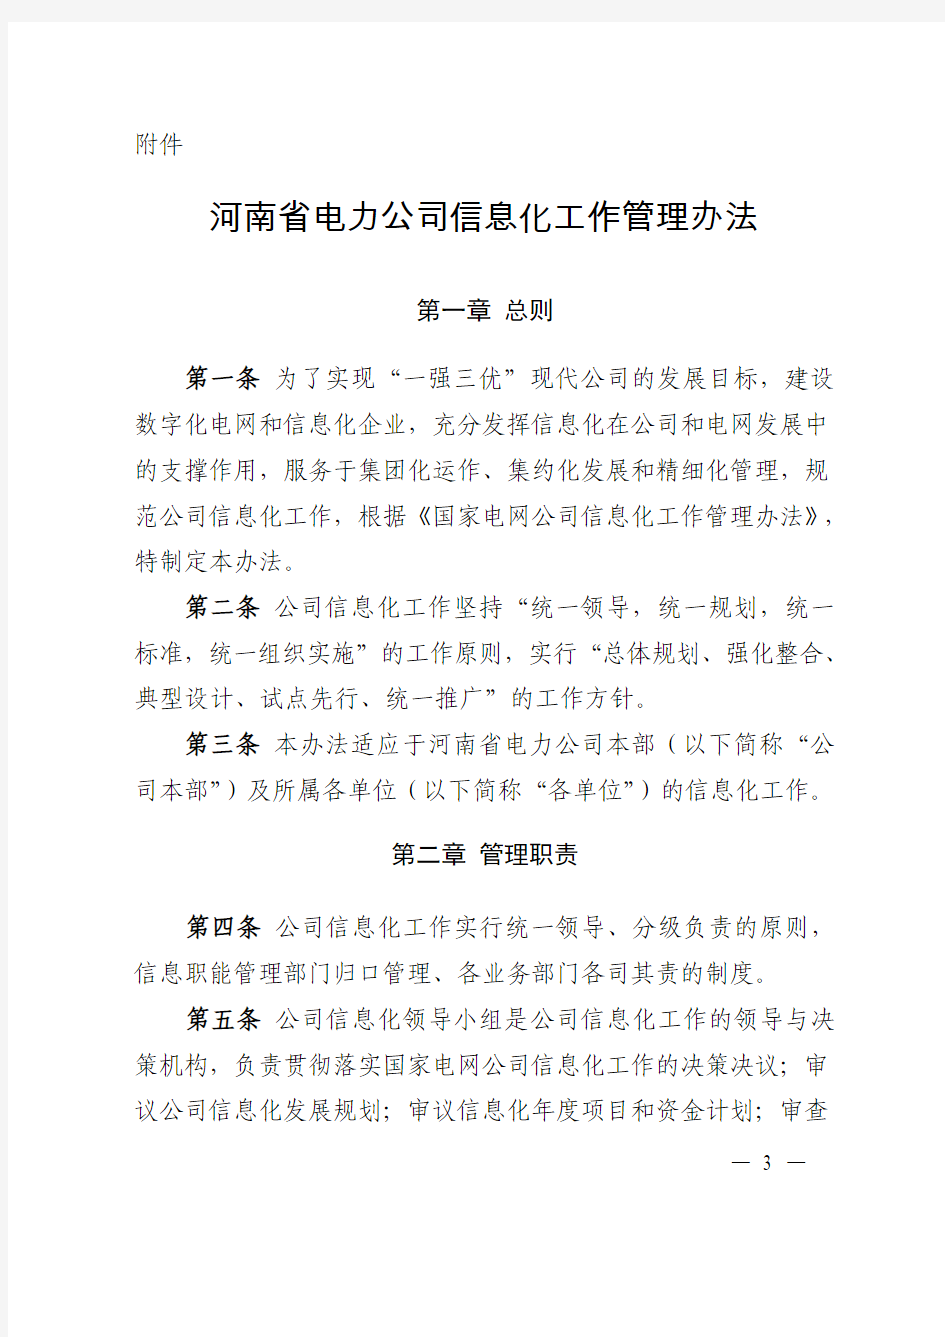 河南省电力公司信息化工作管理办法